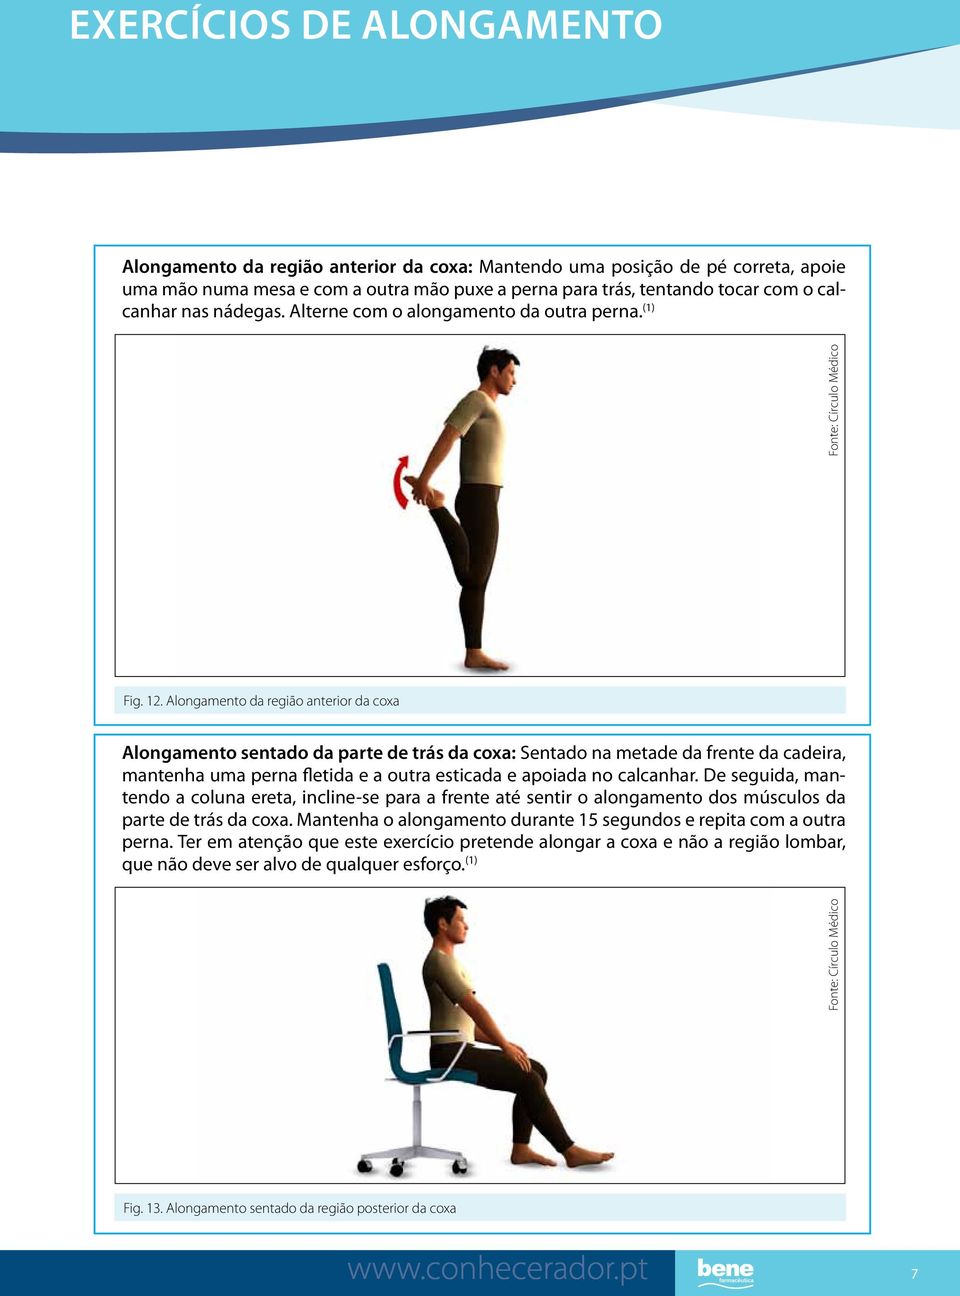 Alongamento da região anterior da coxa Alongamento sentado da parte de trás da coxa: Sentado na metade da frente da cadeira, mantenha uma perna fletida e a outra esticada e apoiada no calcanhar.